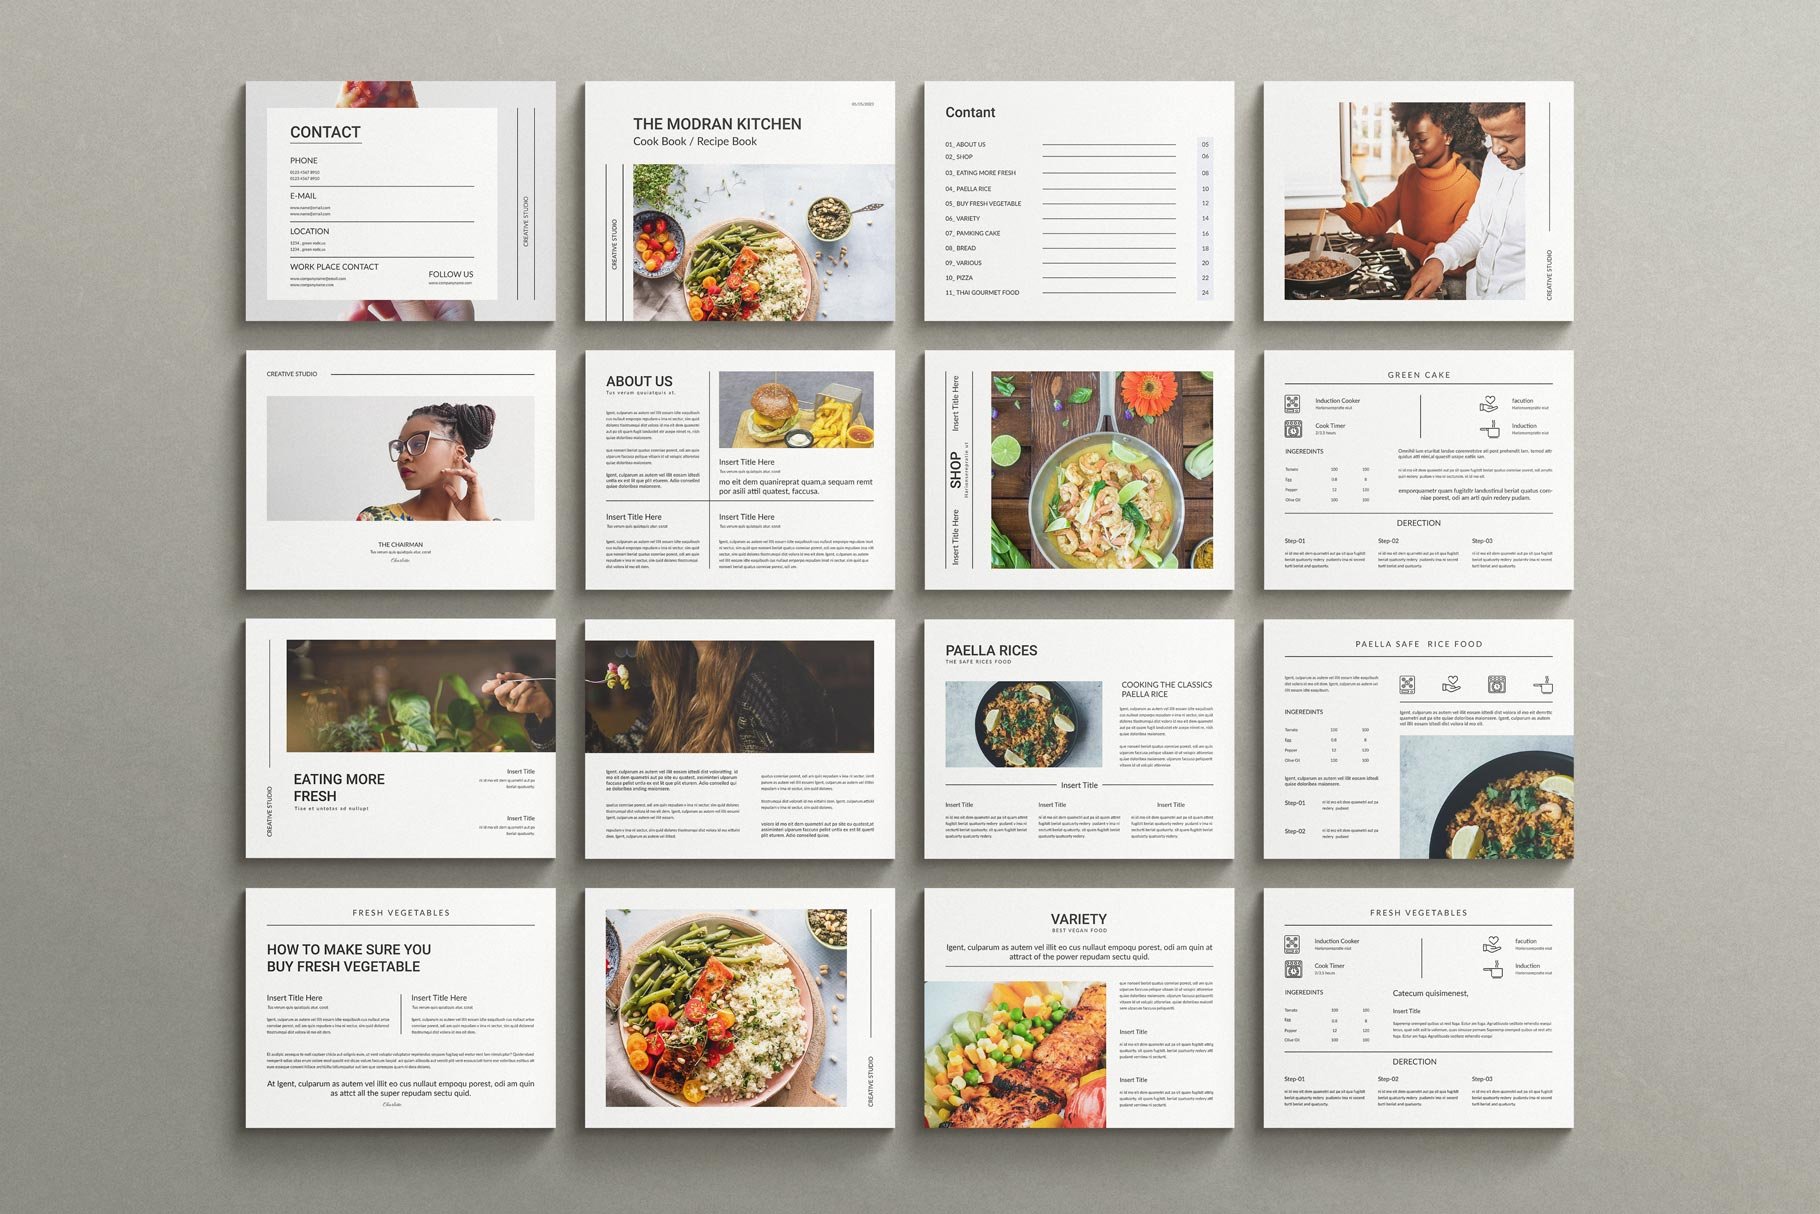 Cookbook Recipe Book Template 2 - Design Cuts